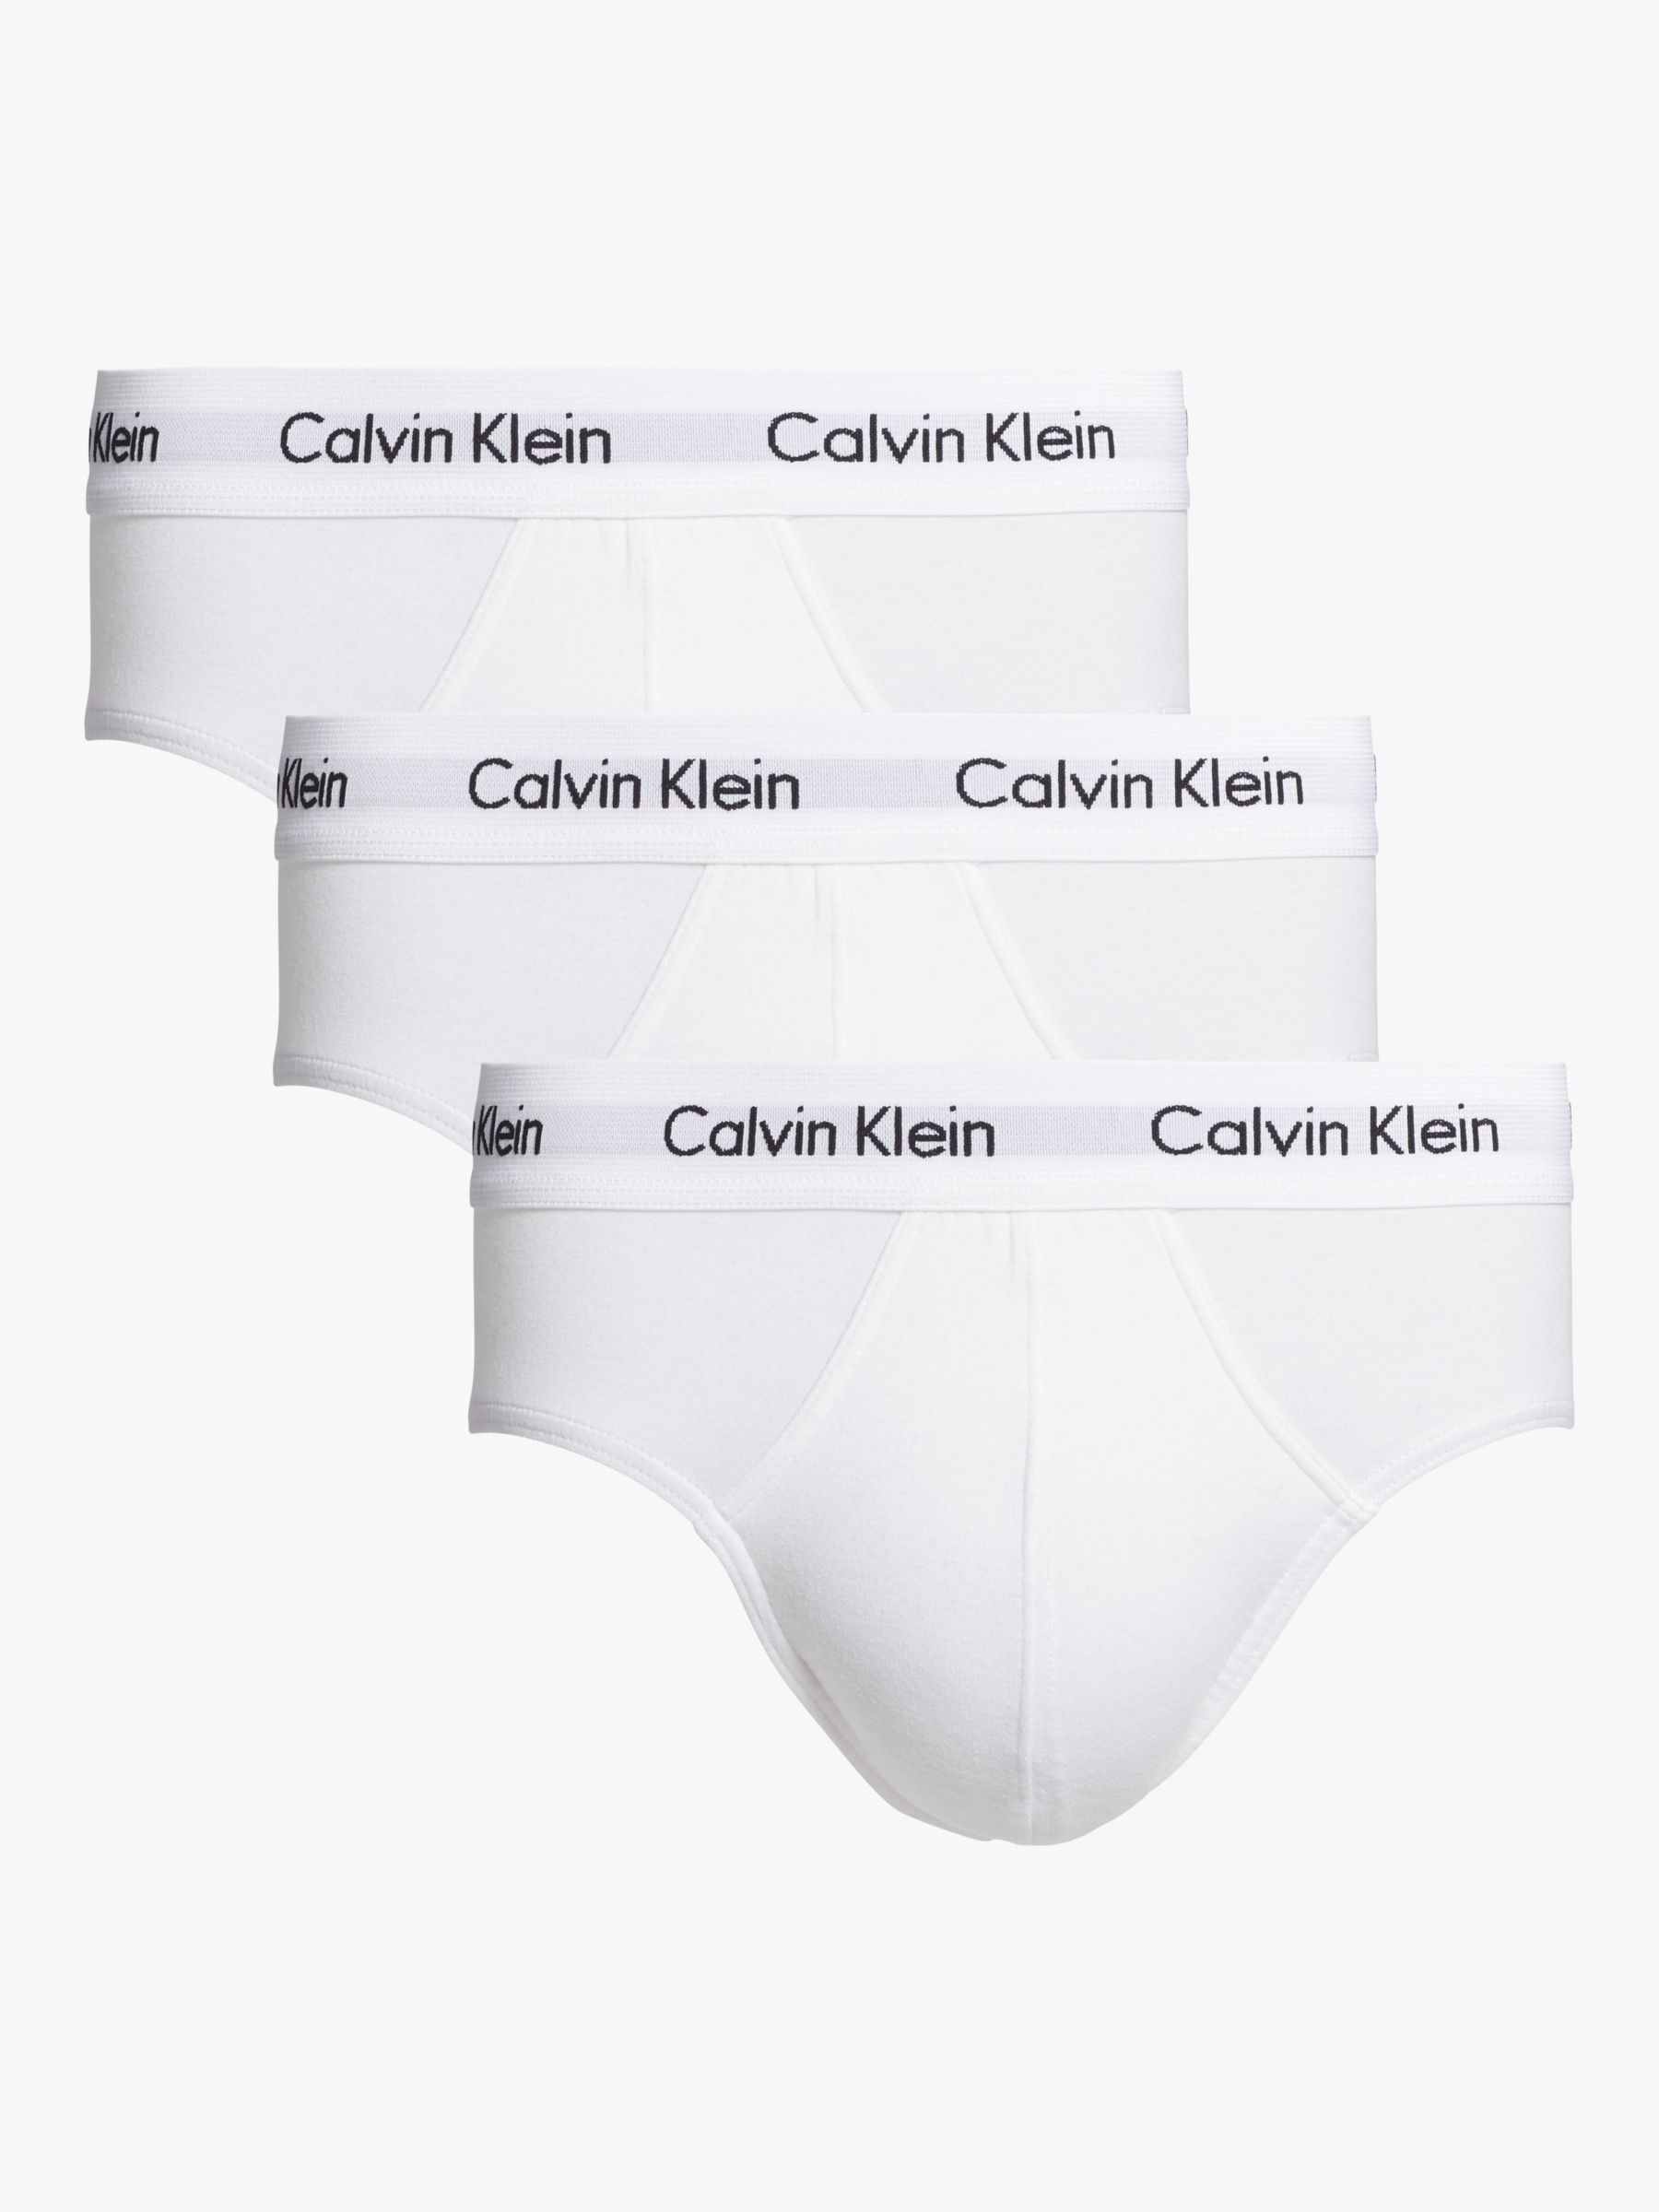 Calvin Klein Underwear Cotton Briefs, Pack of 3, White at John Lewis ...